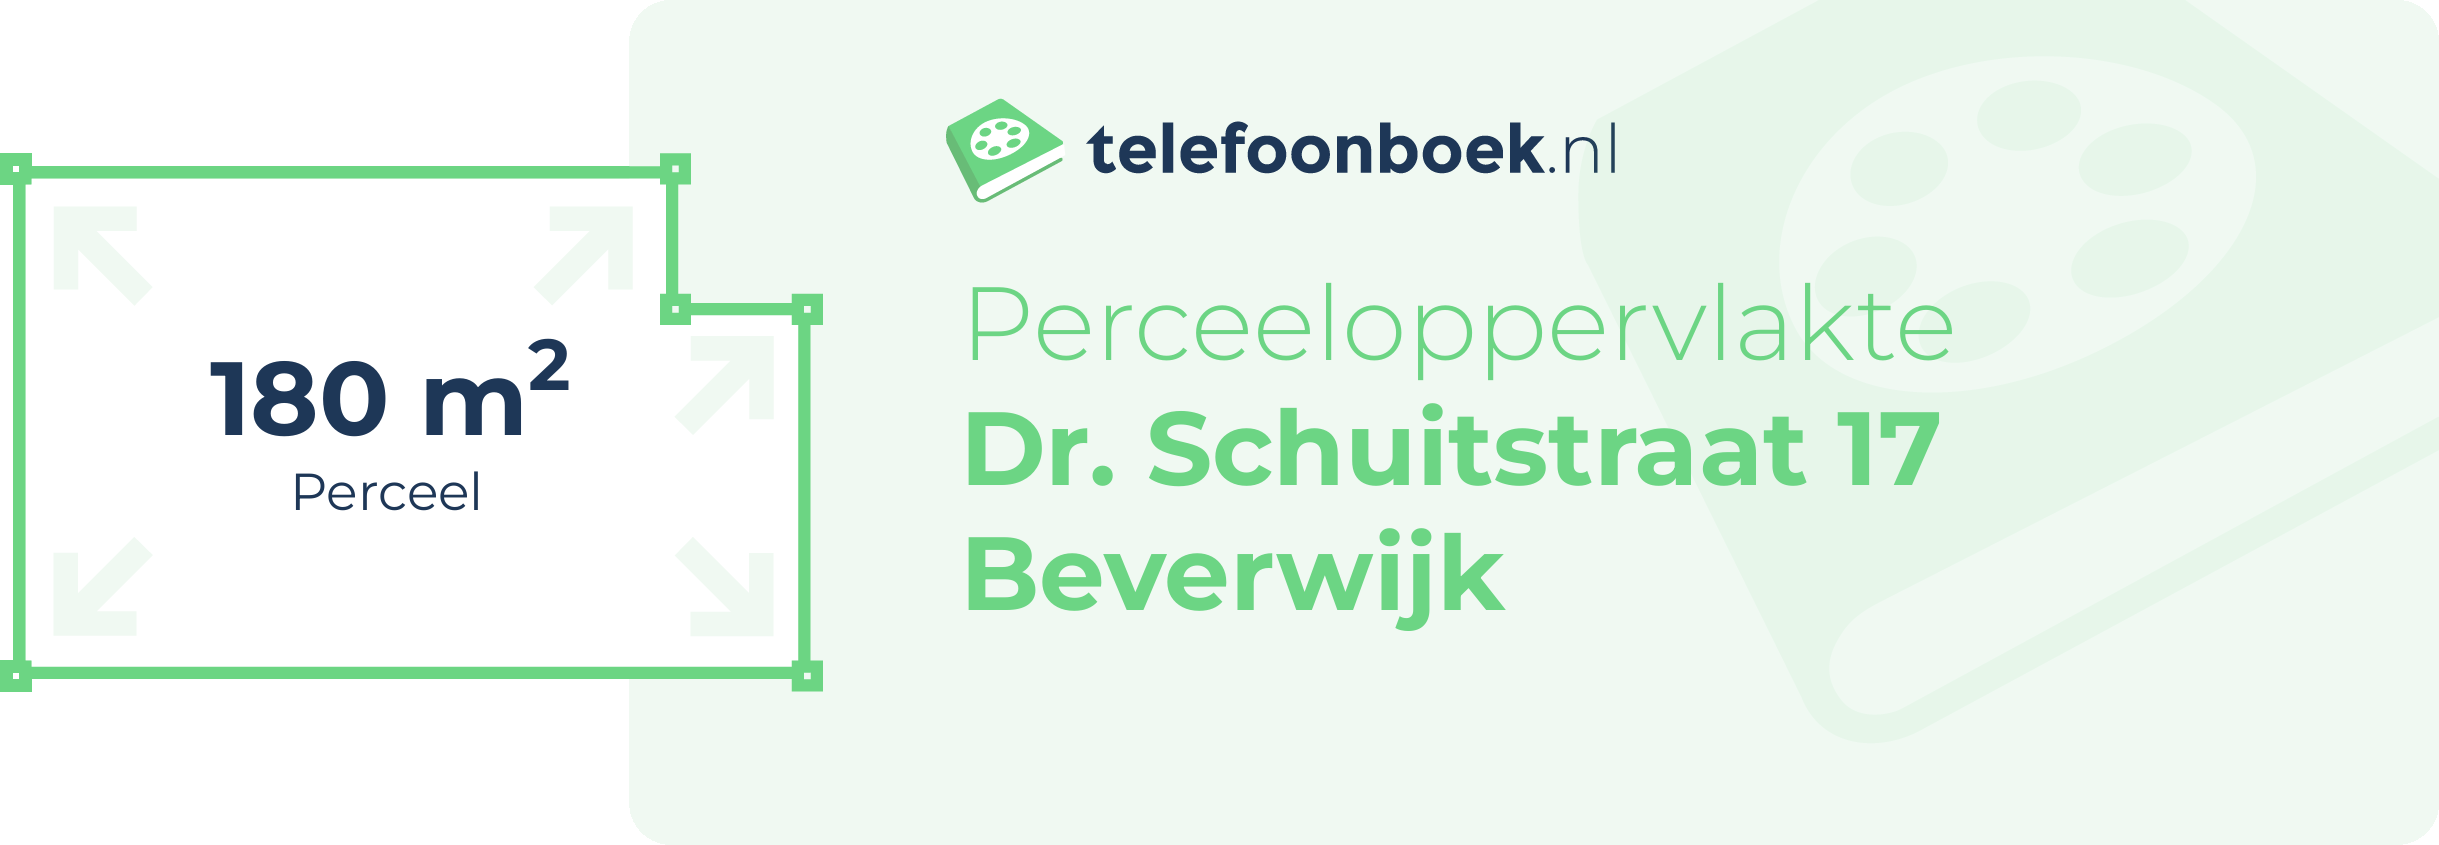 Perceeloppervlakte Dr. Schuitstraat 17 Beverwijk